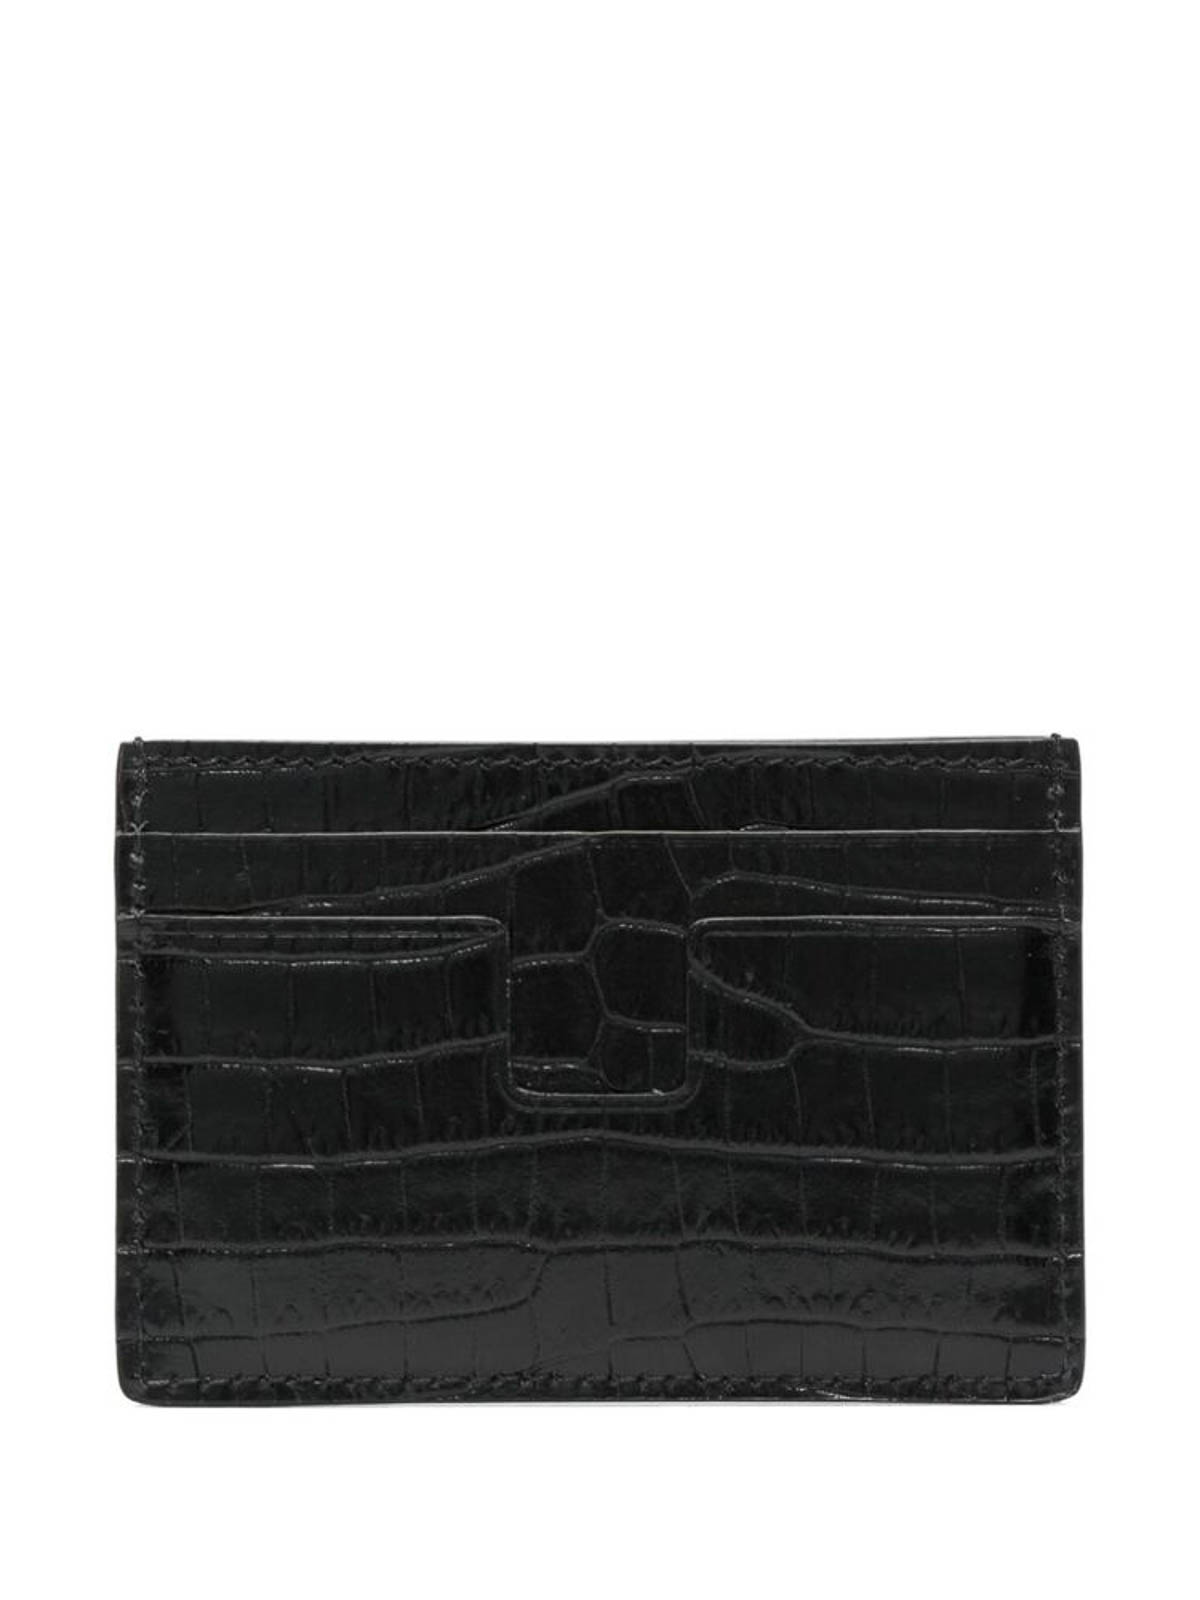 Shop Tom Ford Black Embossed Logo Wallet